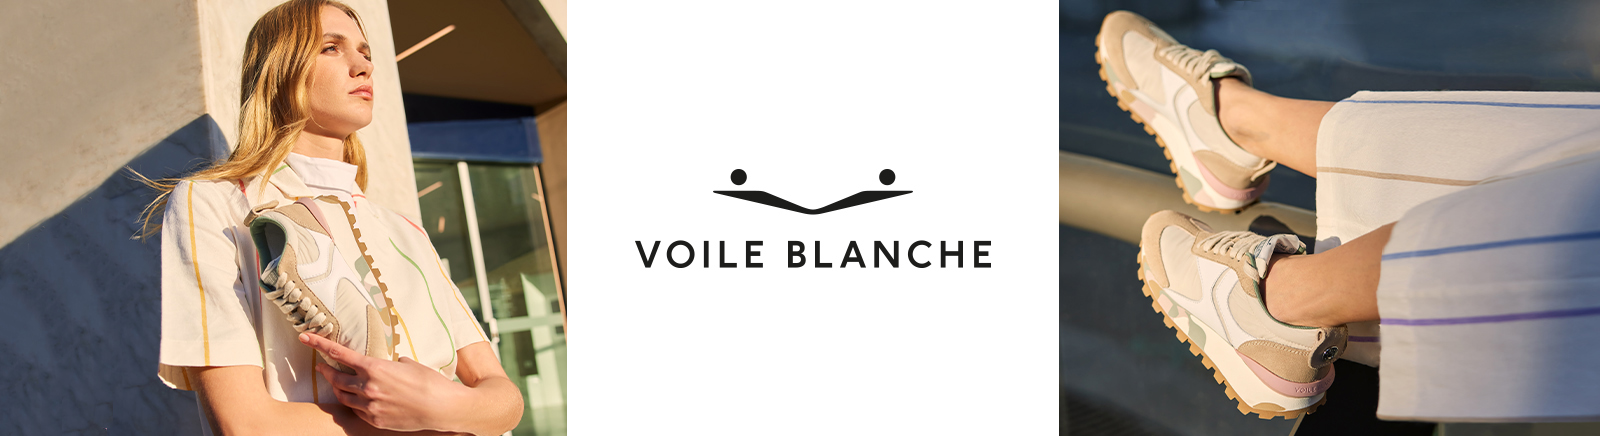 Prange: Voile Blanche High-Top-Sneaker für Damen online shoppen